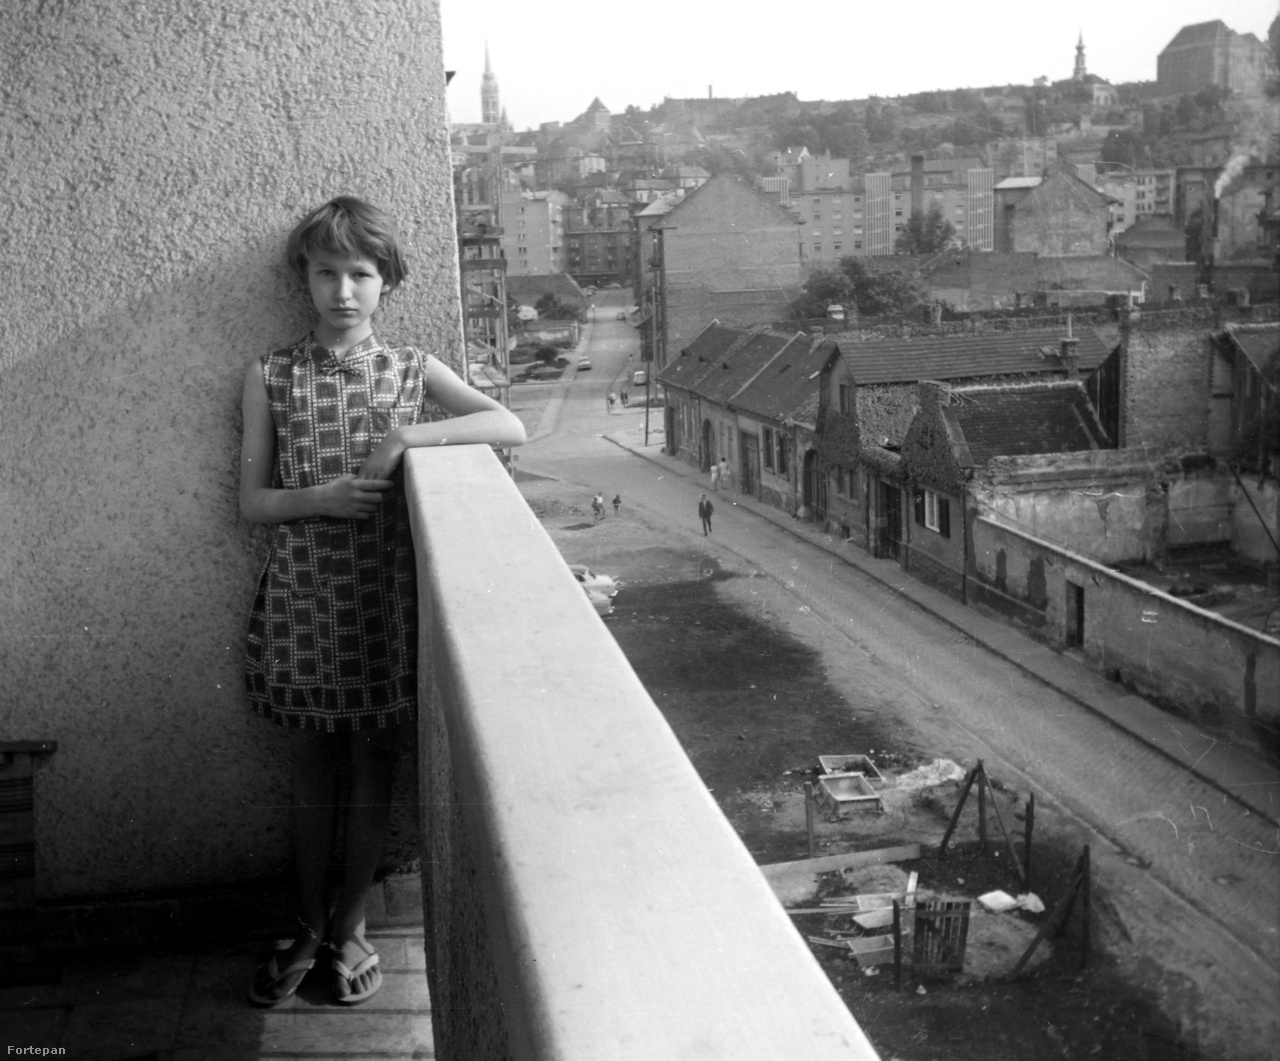 Két világ határán 1966-ban: egy modern épület lodzsáján támaszkodó lányka a Horváth utcában, a másik oldalon még a régi Buda emlékei földszintes házakkal. Ma már irodaházak vannak a helyükön.